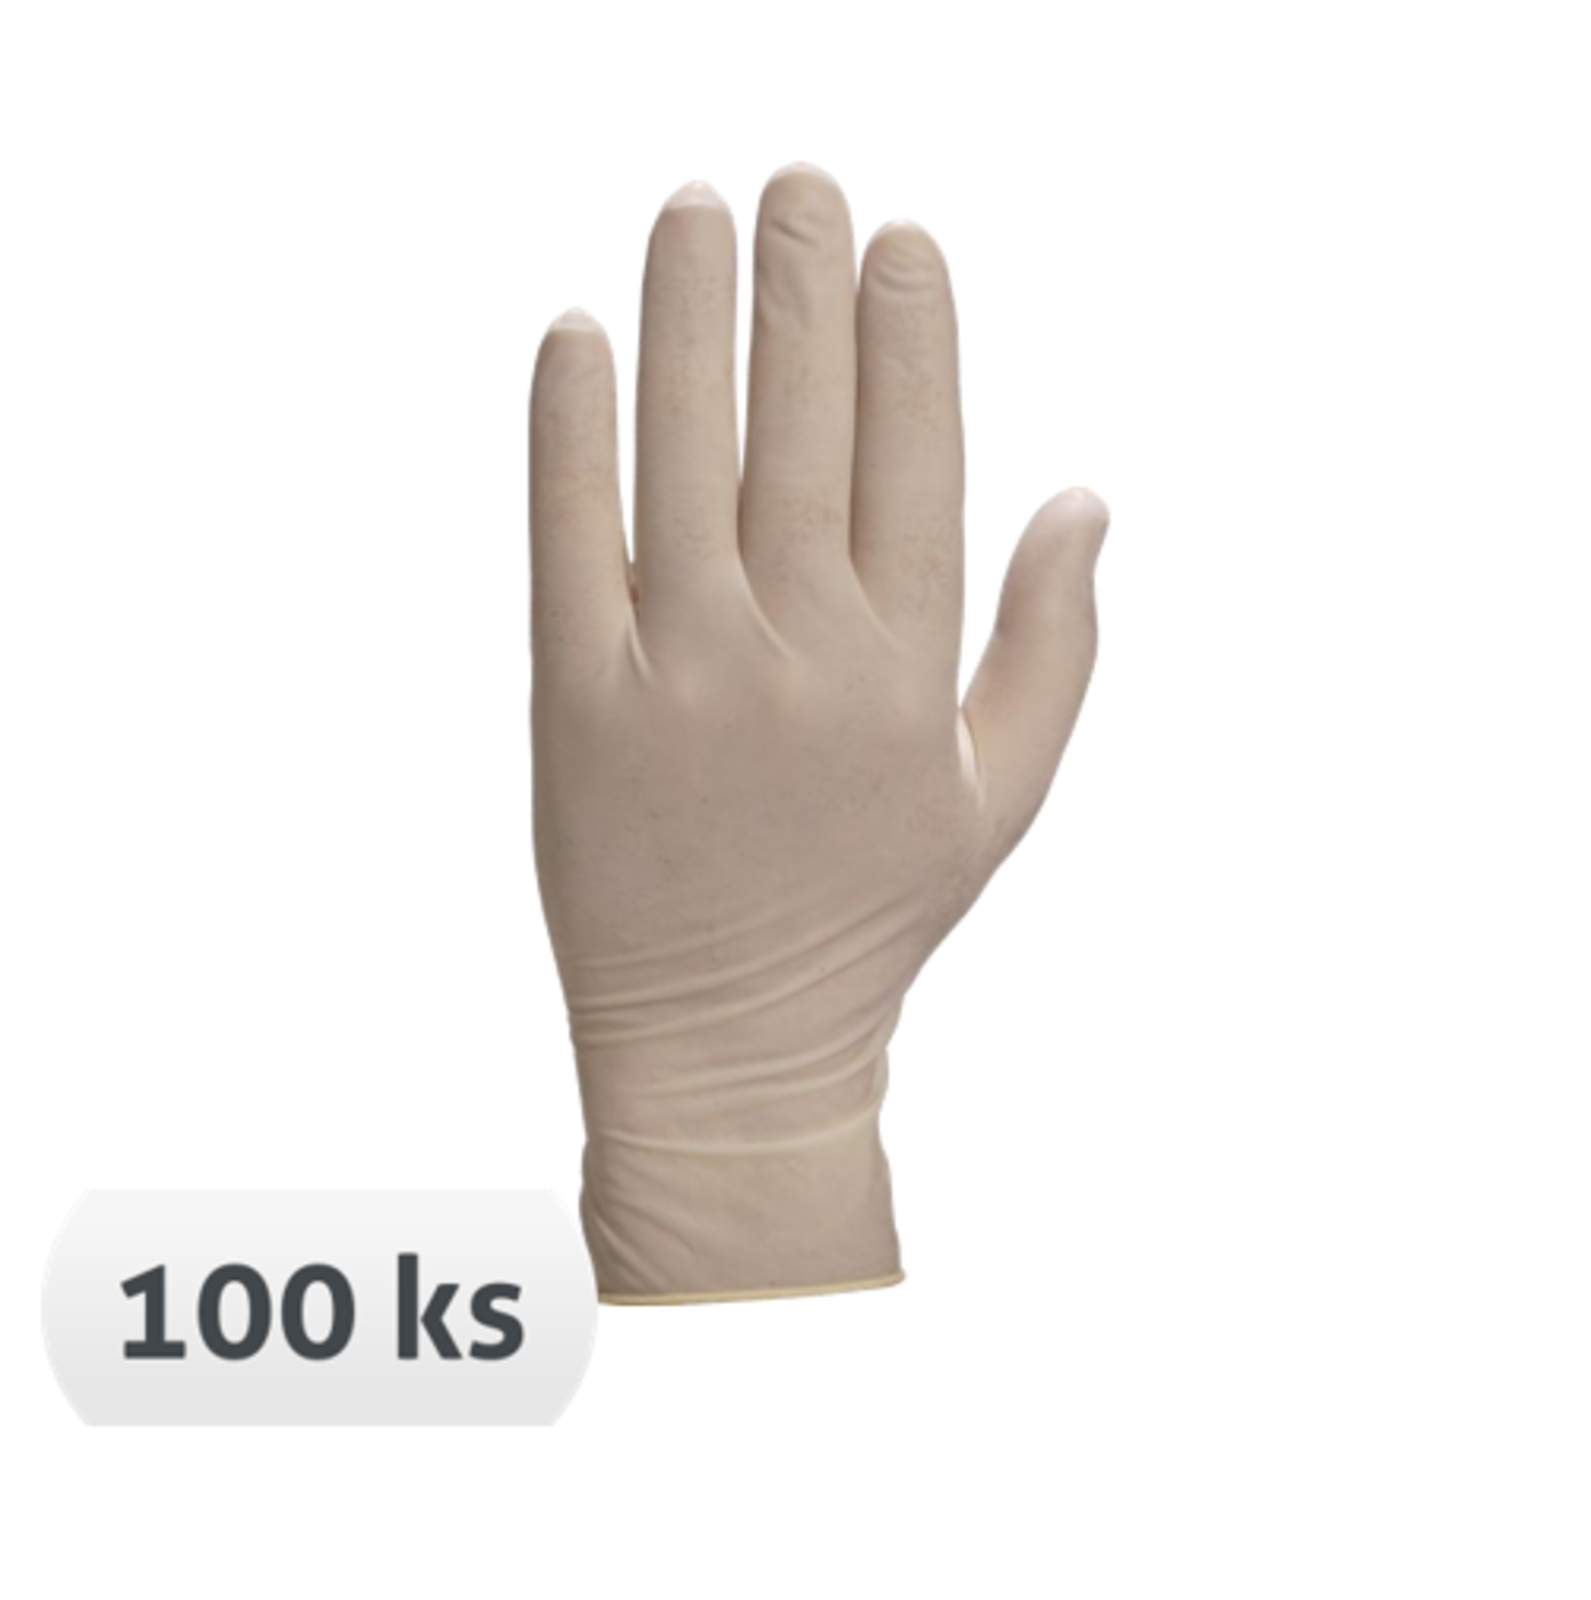 Jednorazové latexové rukavice Venitactyl V1310 púdrované 100 ks - veľkosť: 7/8